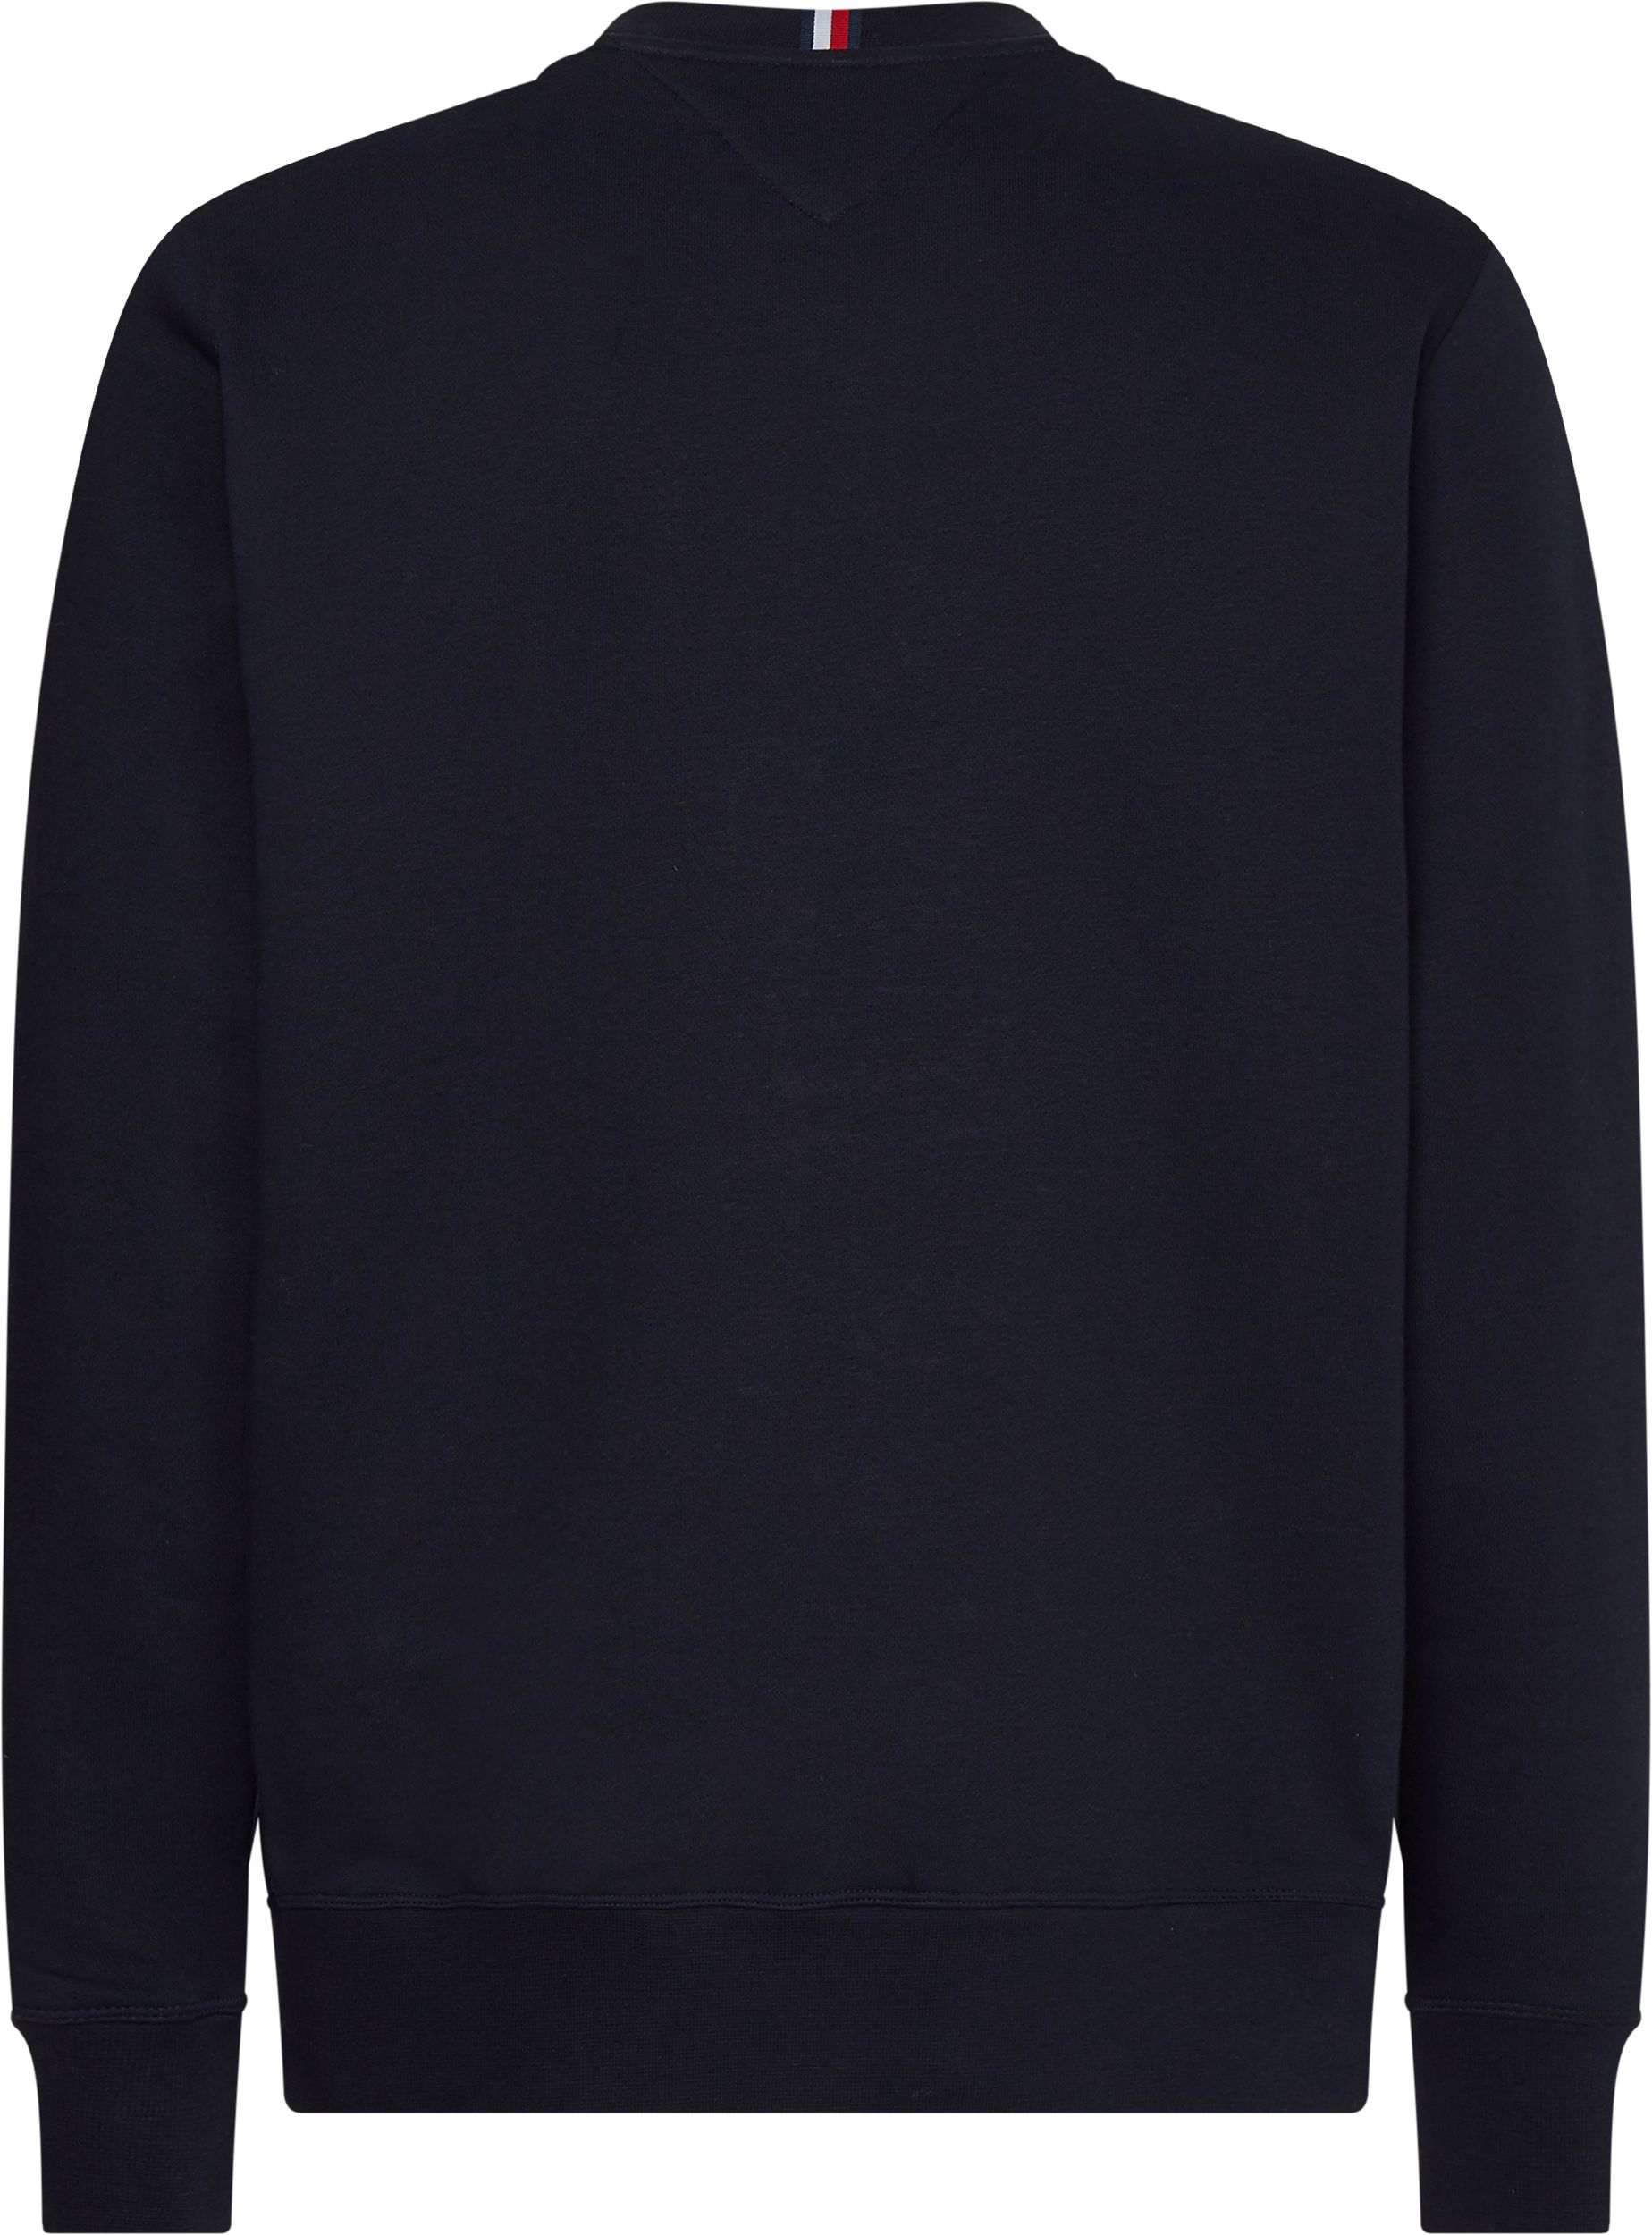 Tommy Hilfiger Menswear Sweater Blauw 083084-001-L